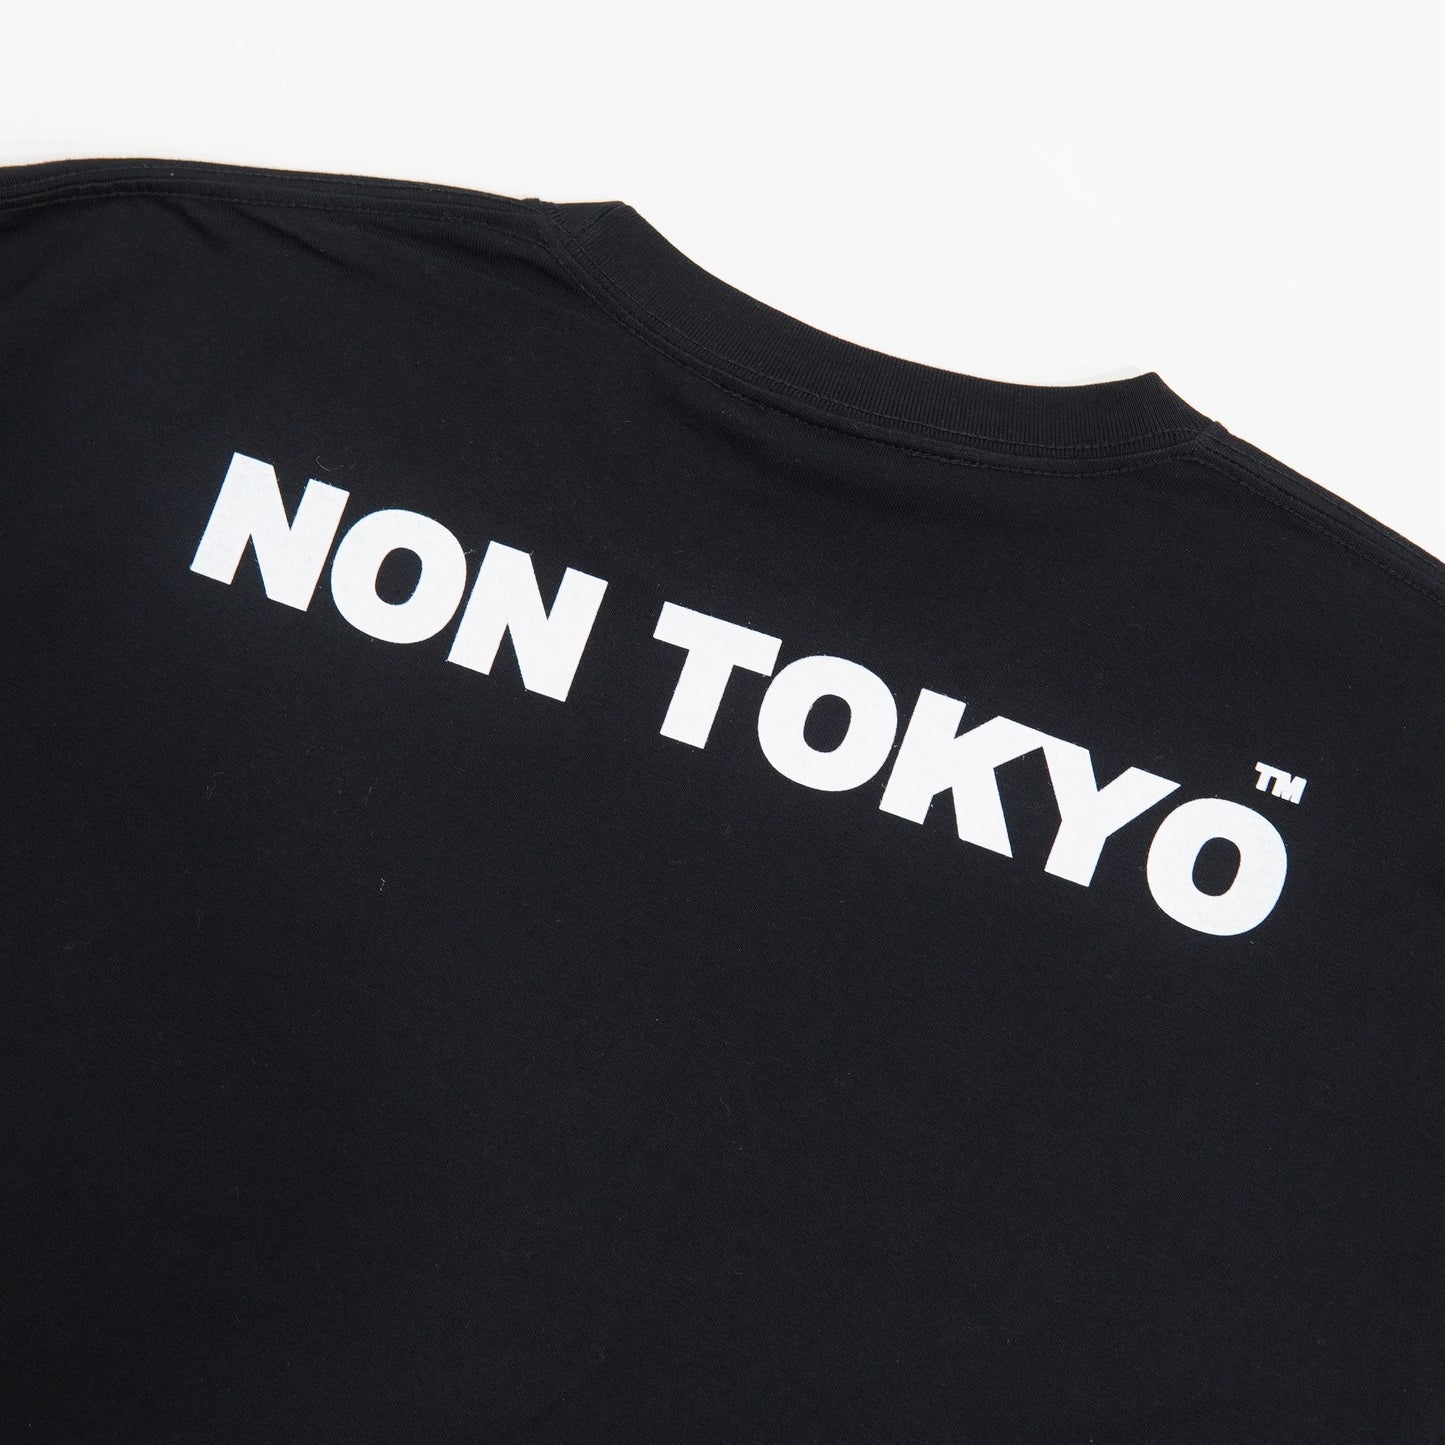 NON TOKYO / PRINT T-SHIRT(Athletic /BLACK/SIZE 1) / 〈ノントーキョー〉プリントTシャツ (アスレチック / ブラック)